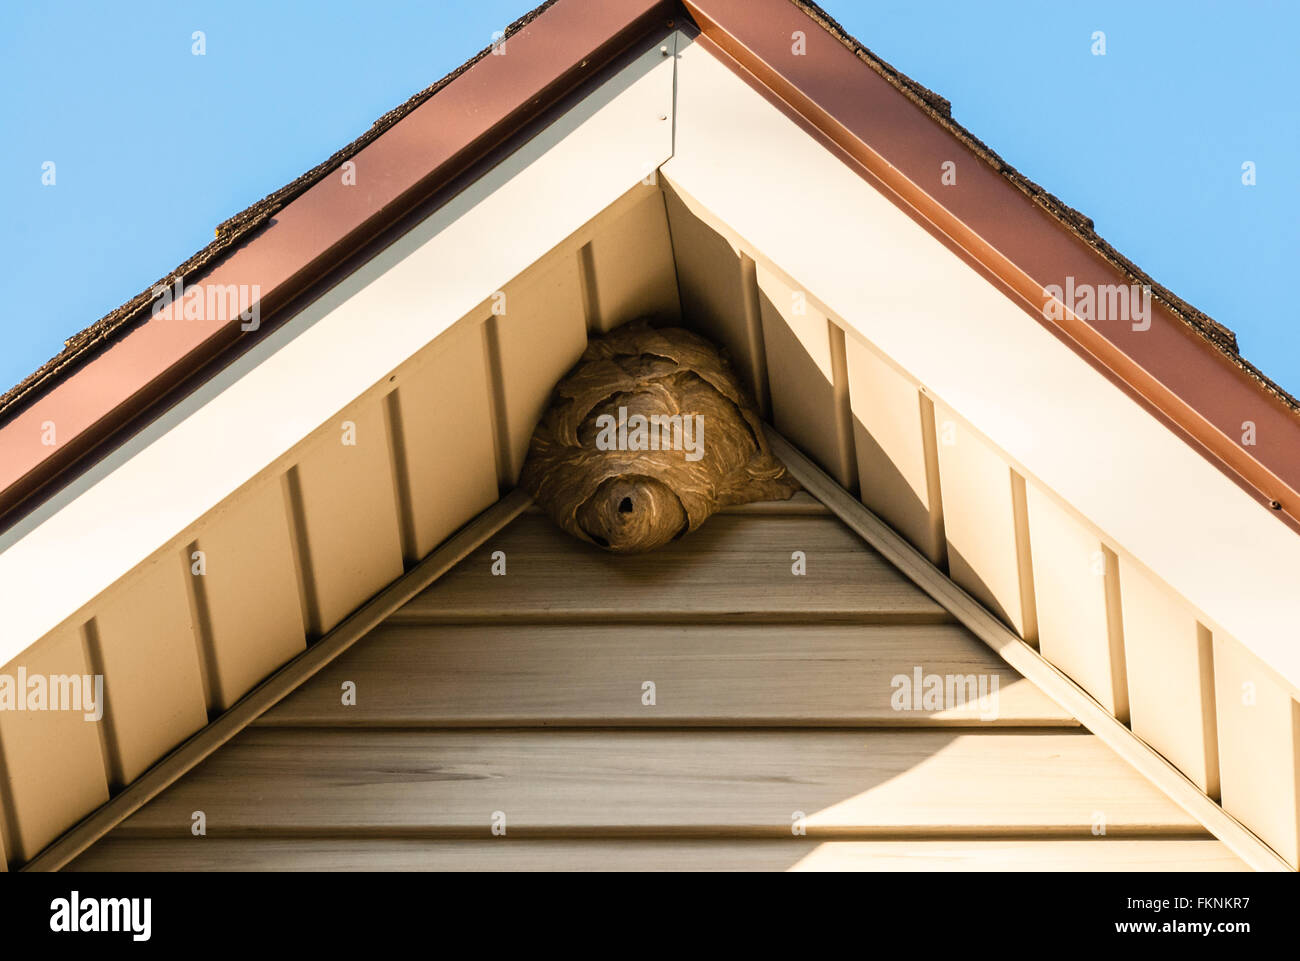 Carta grigia nido di vespe in angolo del tetto triangolare attaccato al schierandosi in alluminio, bordati da marrone a bordo del tetto, contro il cielo blu Foto Stock